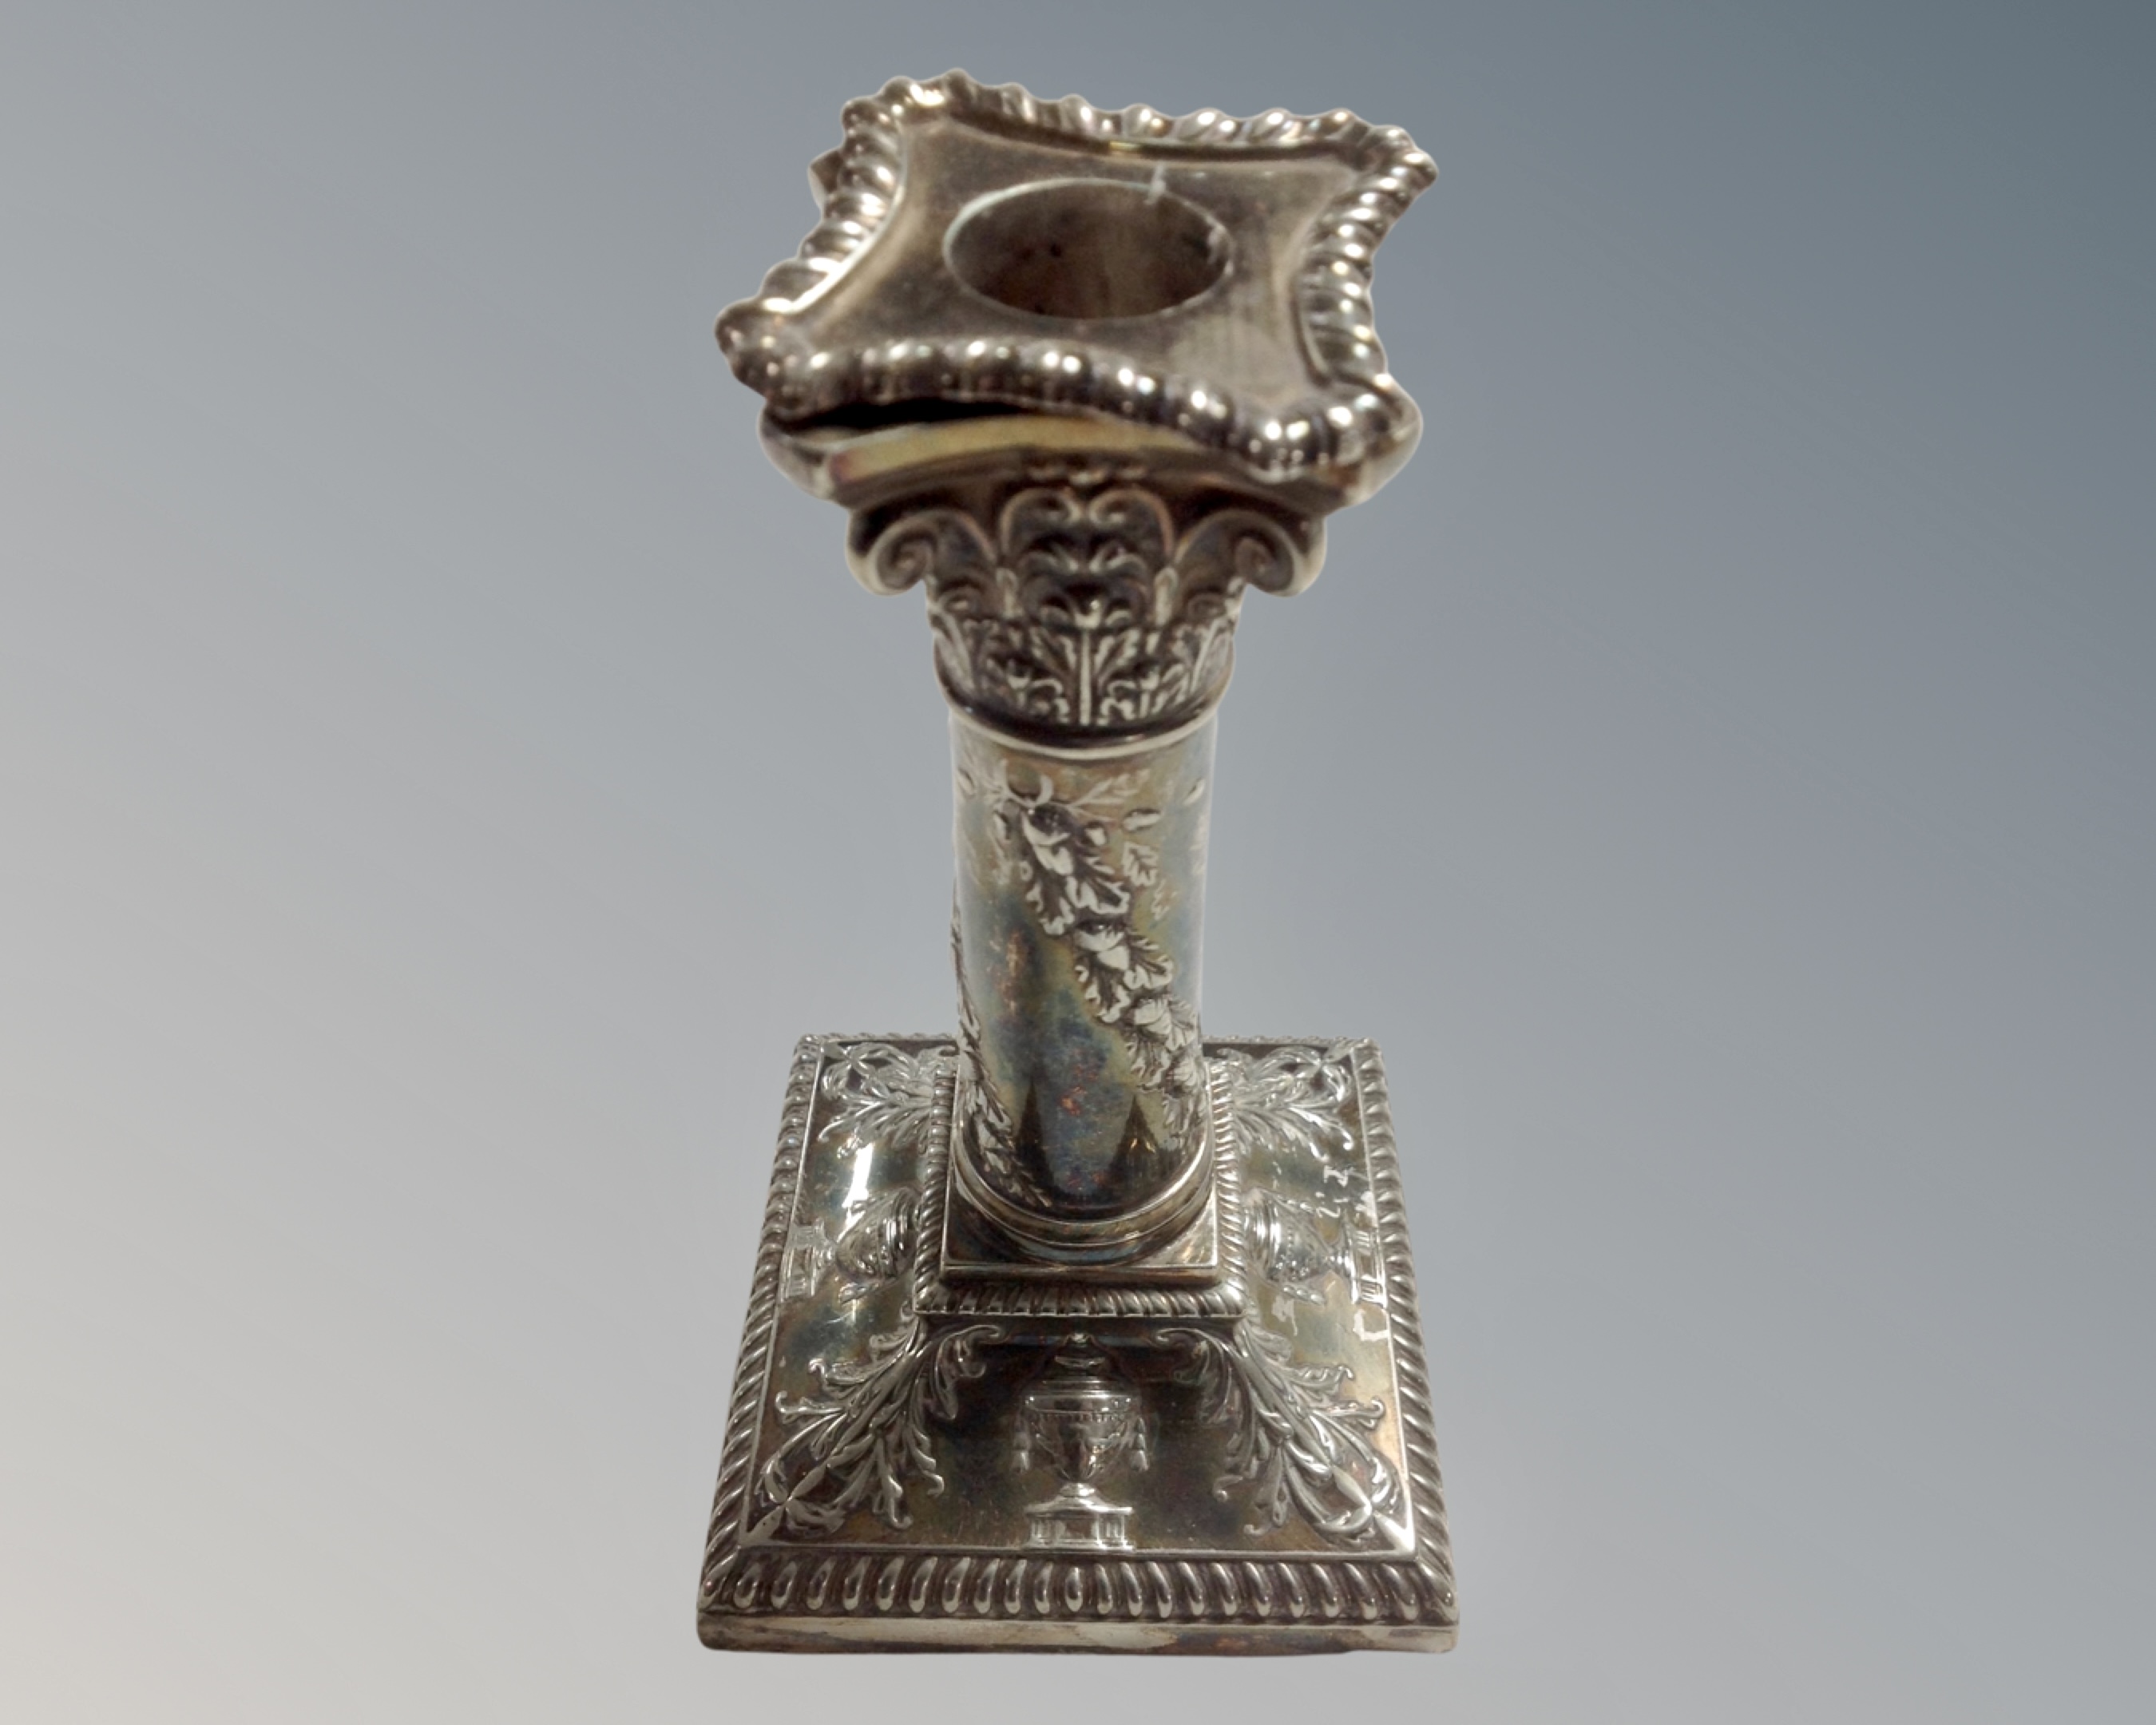 A Walker & Hall silver plated Corinthian column candlestick (height 15.